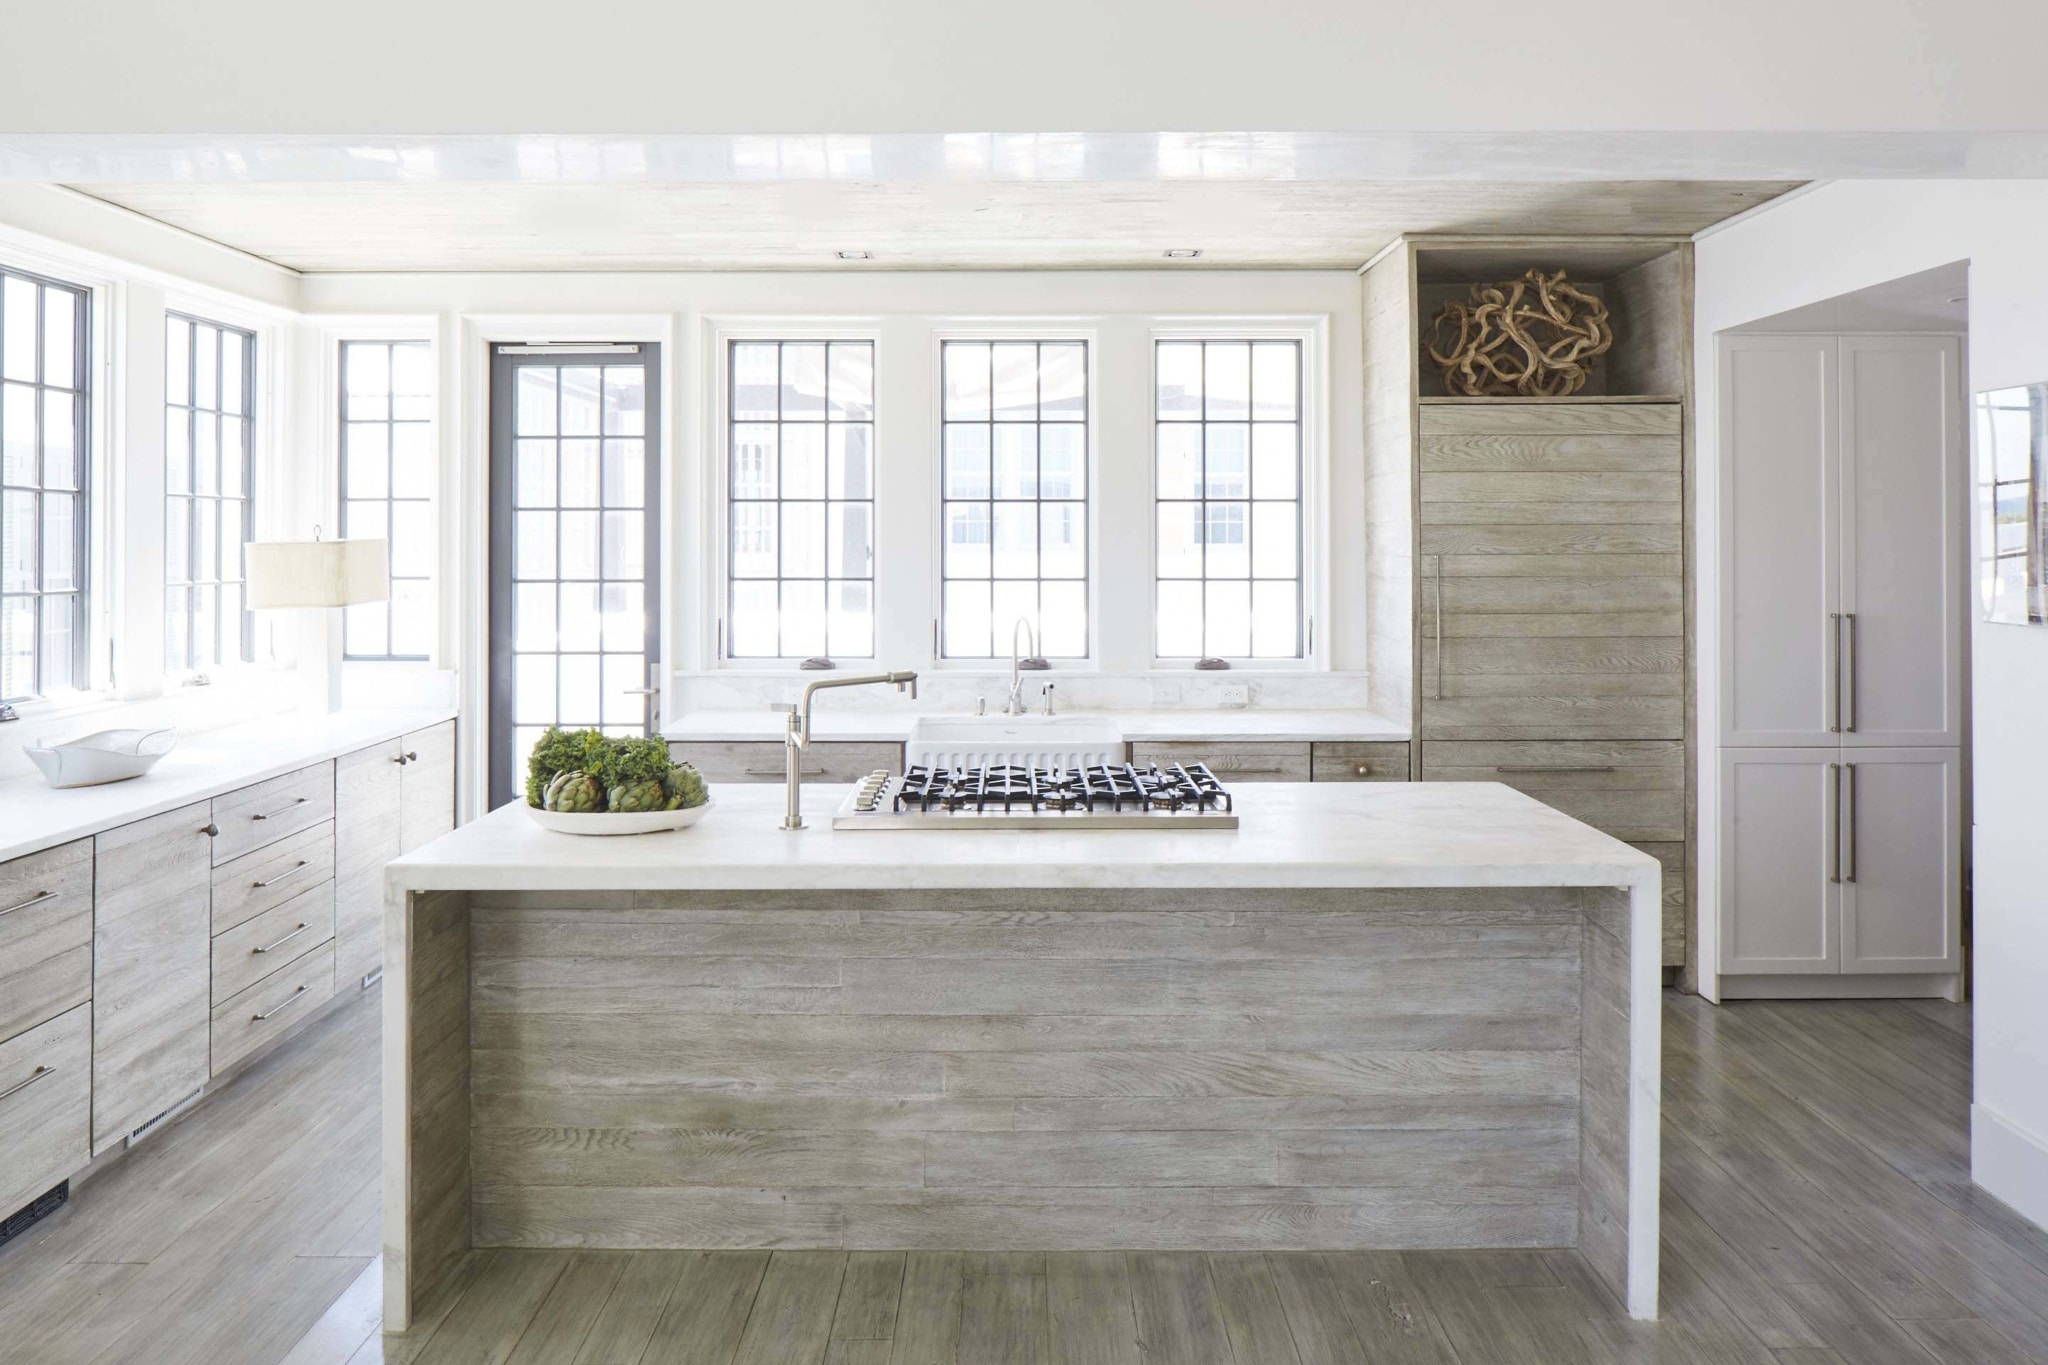 Jeffrey Dungan rooms kitchen with blonde wood | William Abranowicz Photography | kitchen | kitchen design | kitchen decor | kitchen remodel 